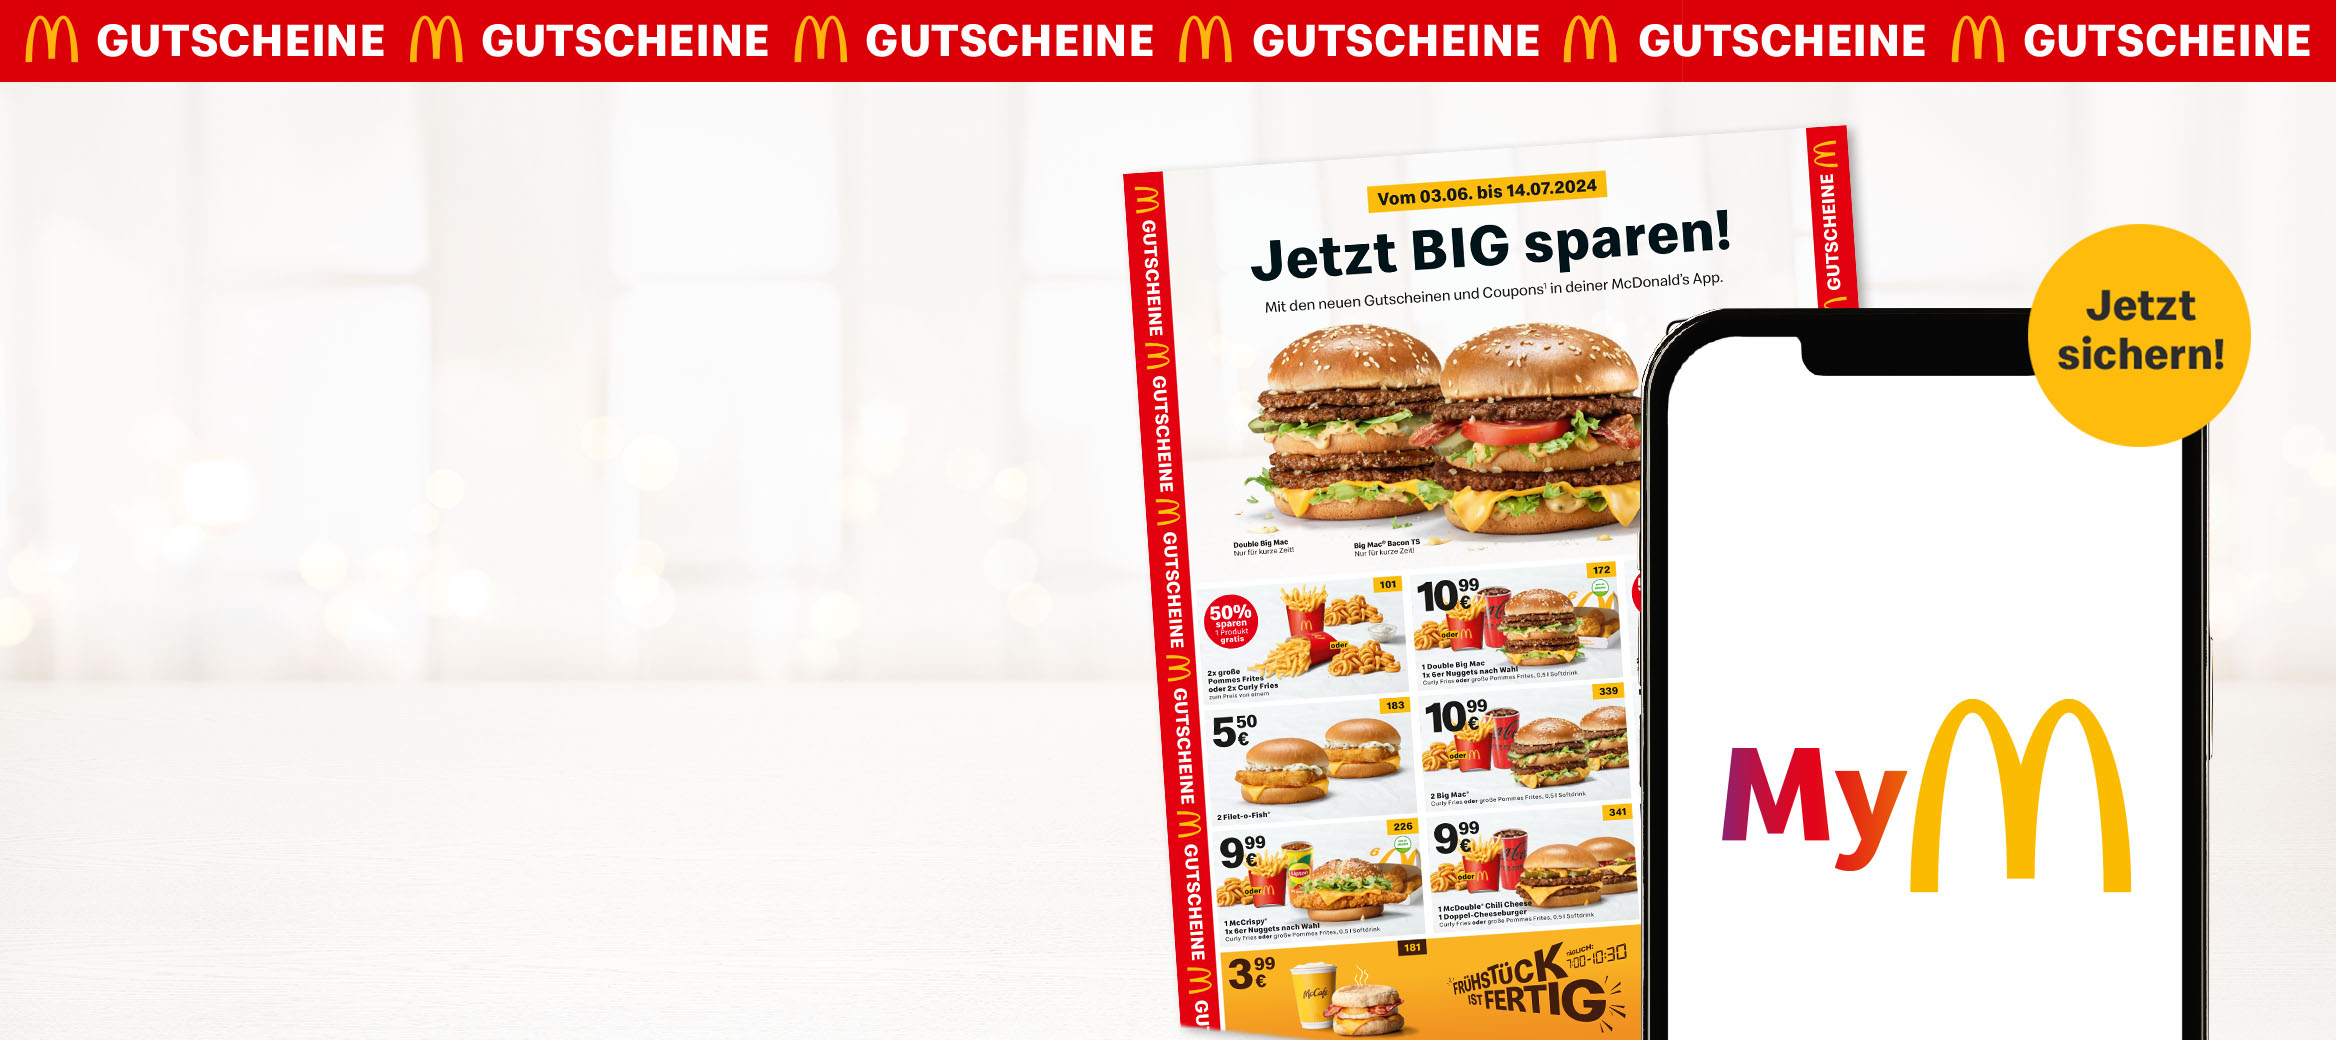 Auf dem Bild befindet sich das aktuelle Gutscheinheft mit der Überschrift „Jetzt BIG sparen!“ über einem Big Mac® Bacon TS und Double Big Mac. Daneben ein Smartphone mit dem My McDonald’s- Logo.